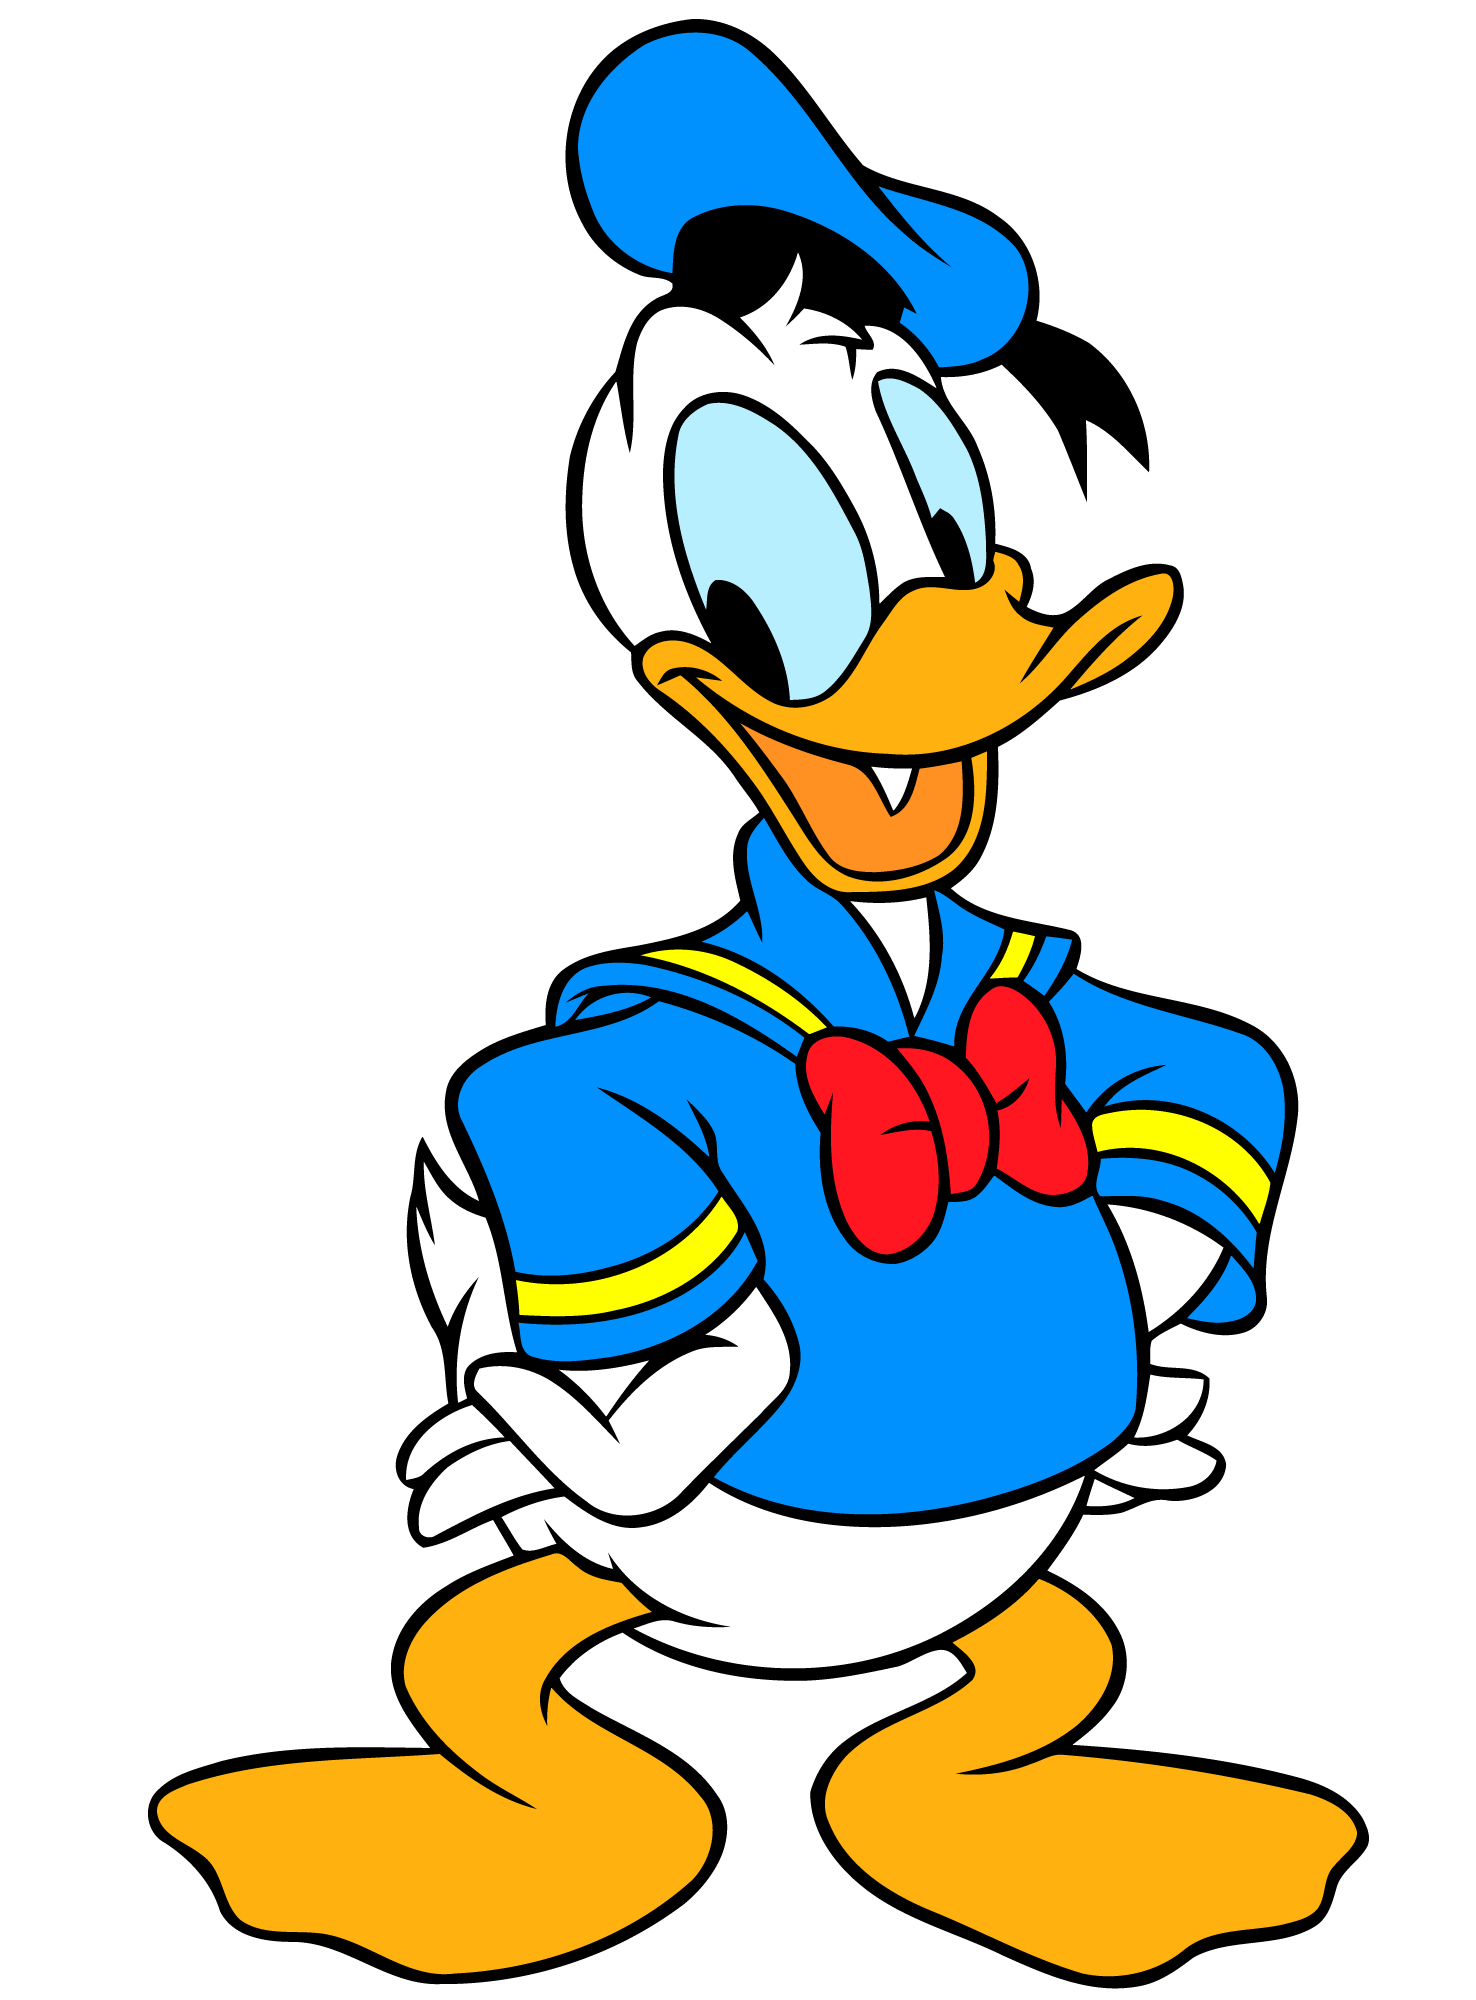 Donald Duck | Death Battle Fanon Wiki | FANDOM powered by Wikia